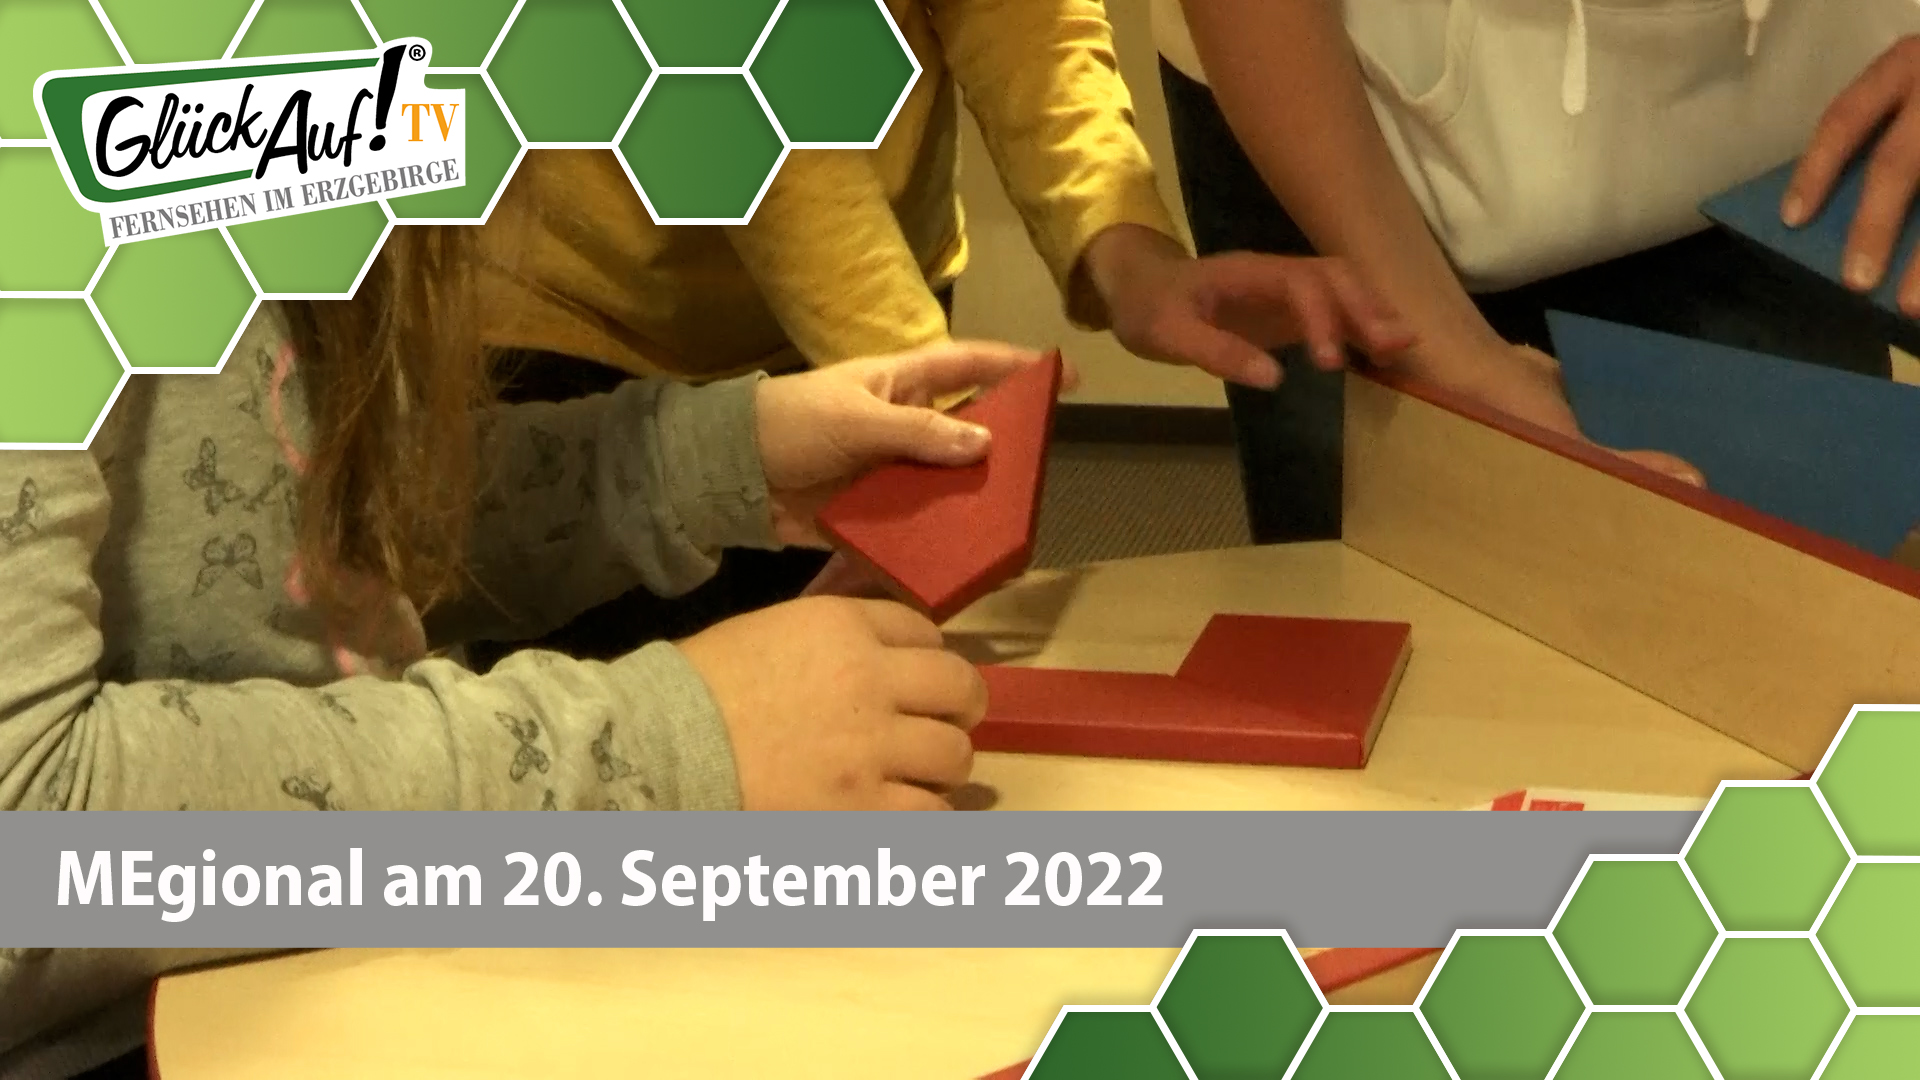 MEgional am 20. September 2022 - mit der Faszination Mathematik im Haus Hanischallee